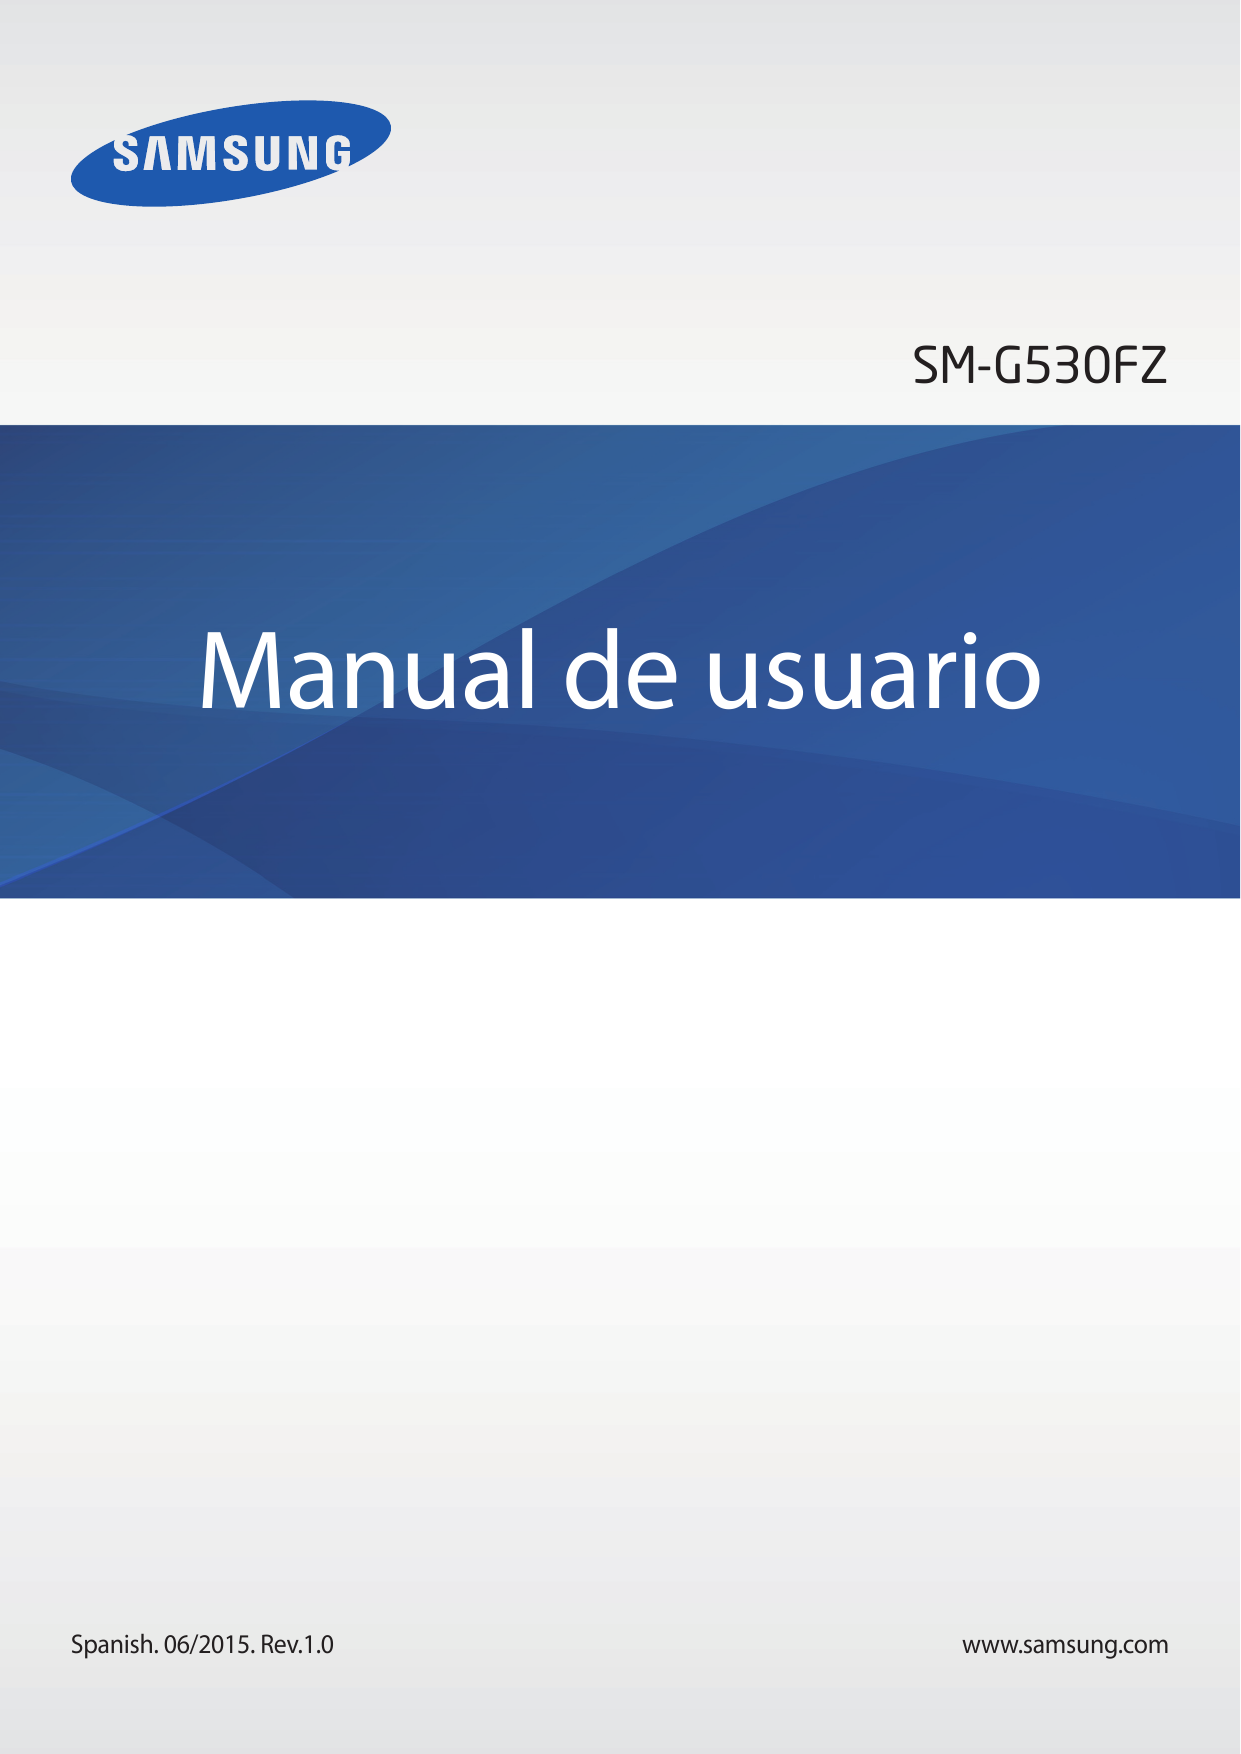 SM-G530FZManual de usuarioSpanish. 06/2015. Rev.1.0www.samsung.com